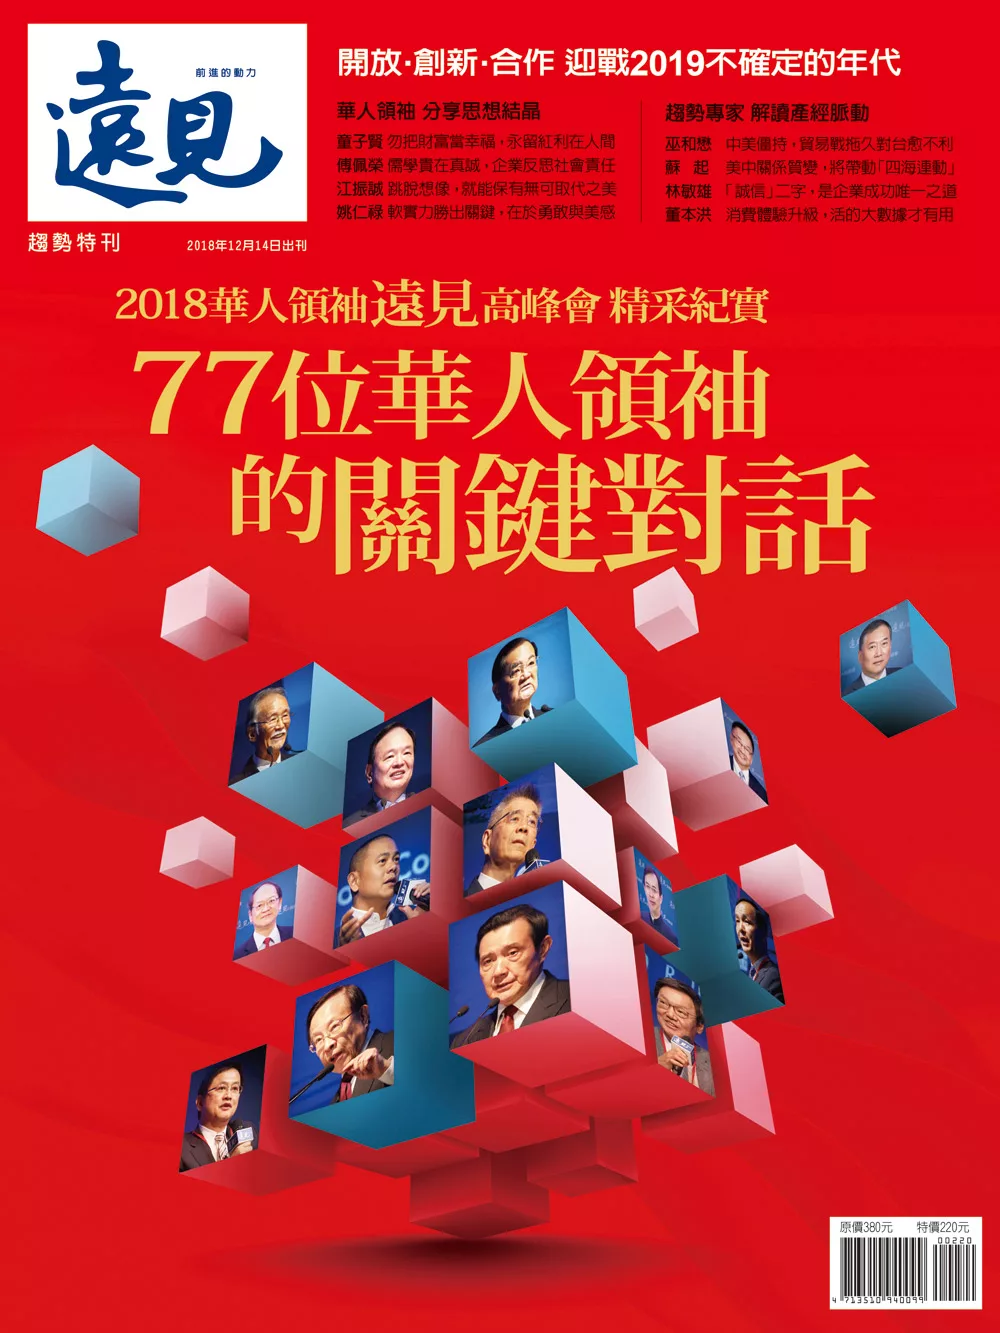 遠見 77位華人領袖的關鍵對話 (電子雜誌)